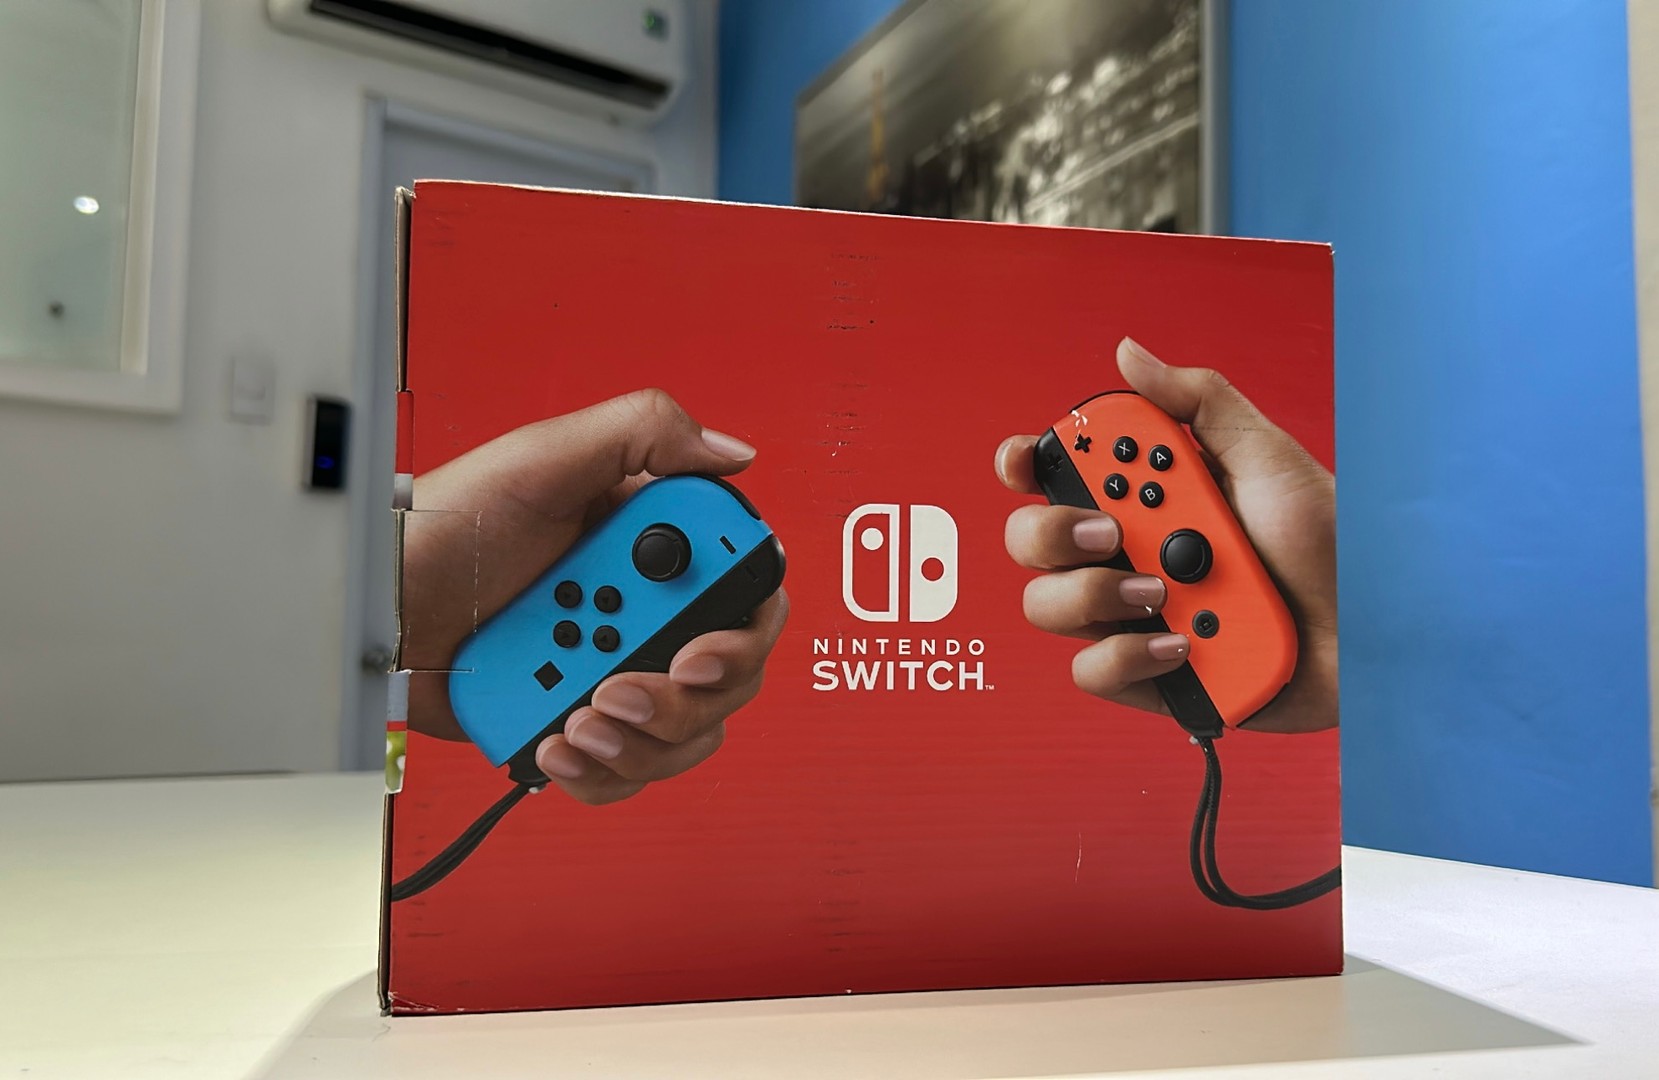 consolas y videojuegos - Vendo Consola Nintendo Switch Version Mejorada Nuevos Sellados, RD$ 18,300 NEG 1